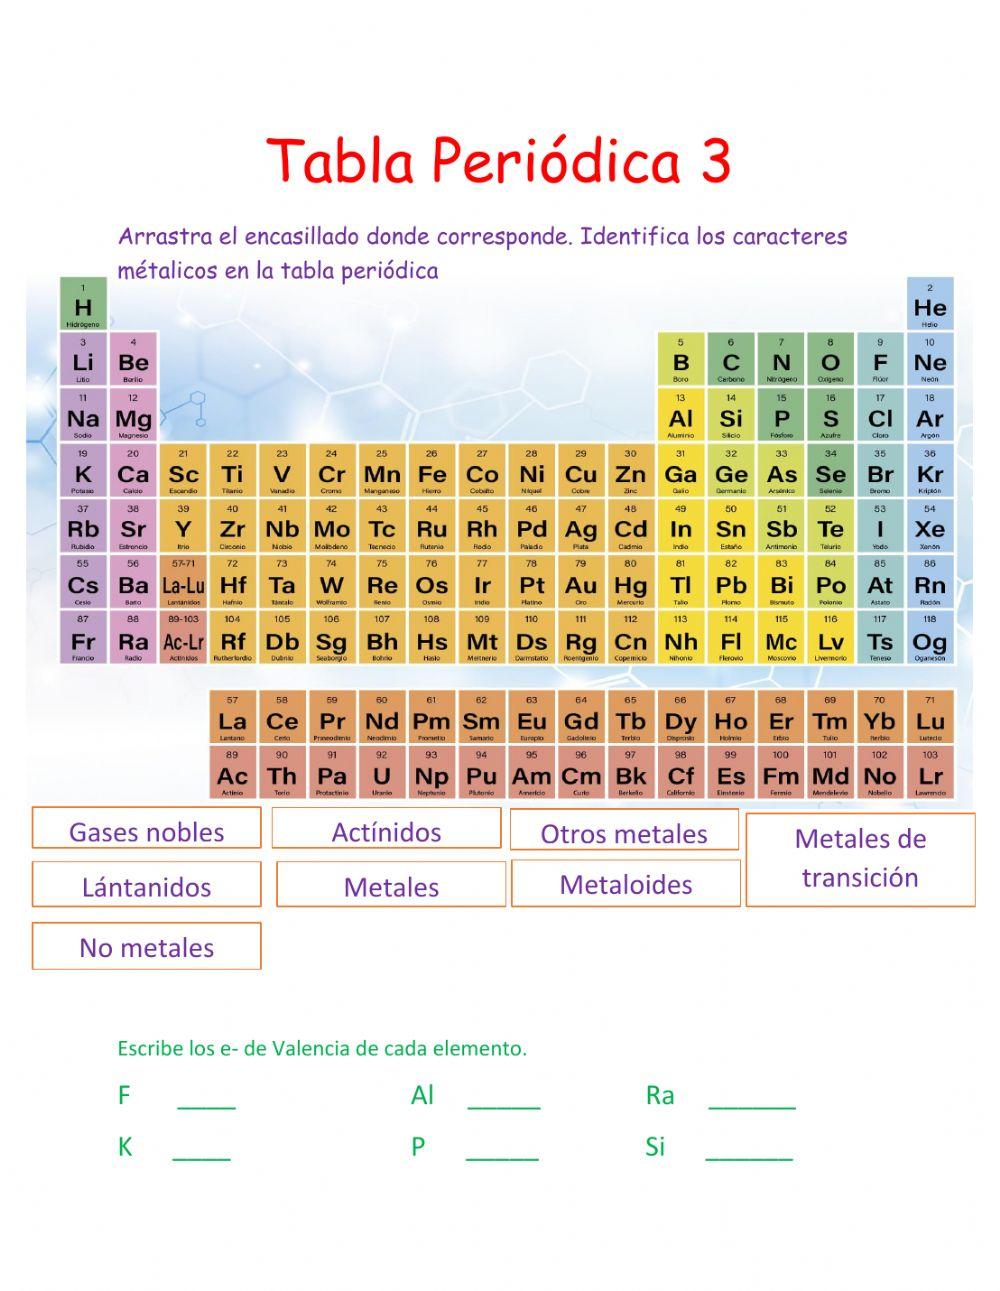 Identifica los caracteres metálicos de la tabla periódica